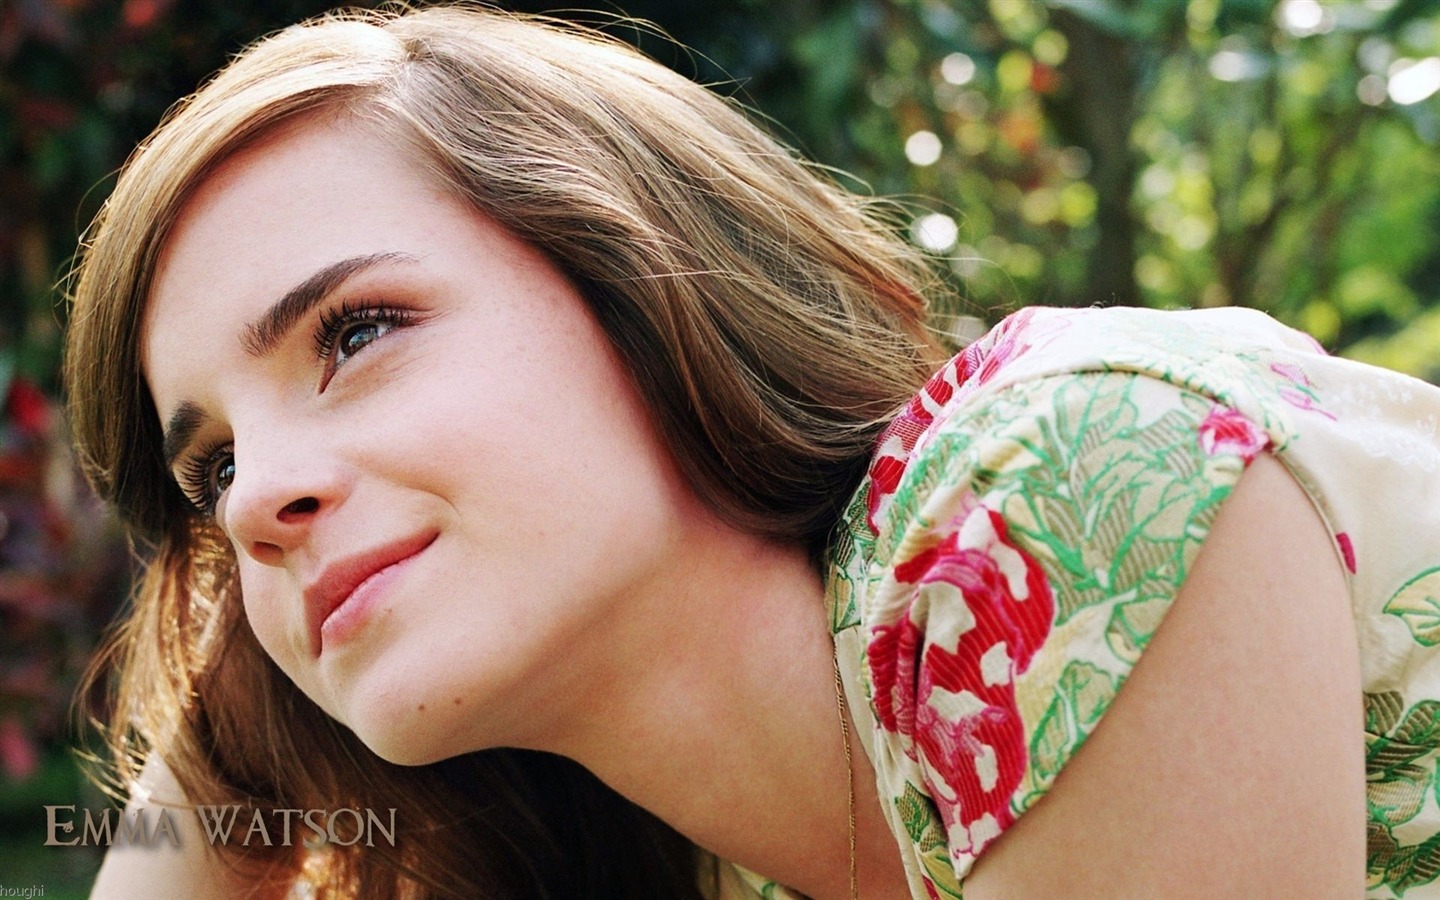 Emma Watson beautiful wallpaper #26 - 1440x900